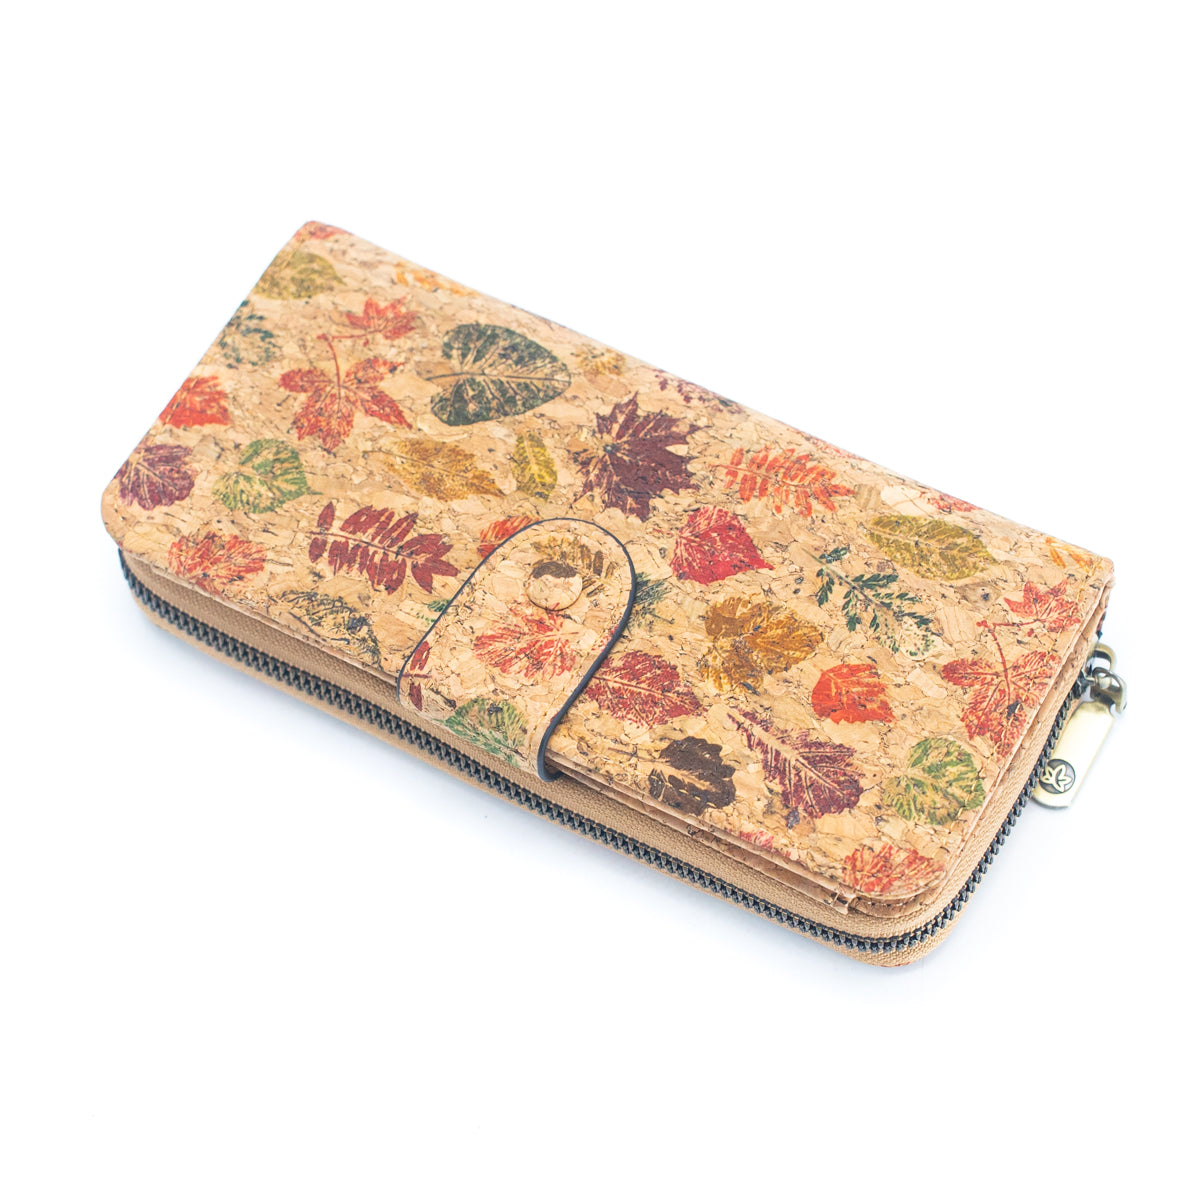 6 portefeuilles en liège naturel avec motifs floraux (paquet de 6 unités) HY-033-MIX-6 